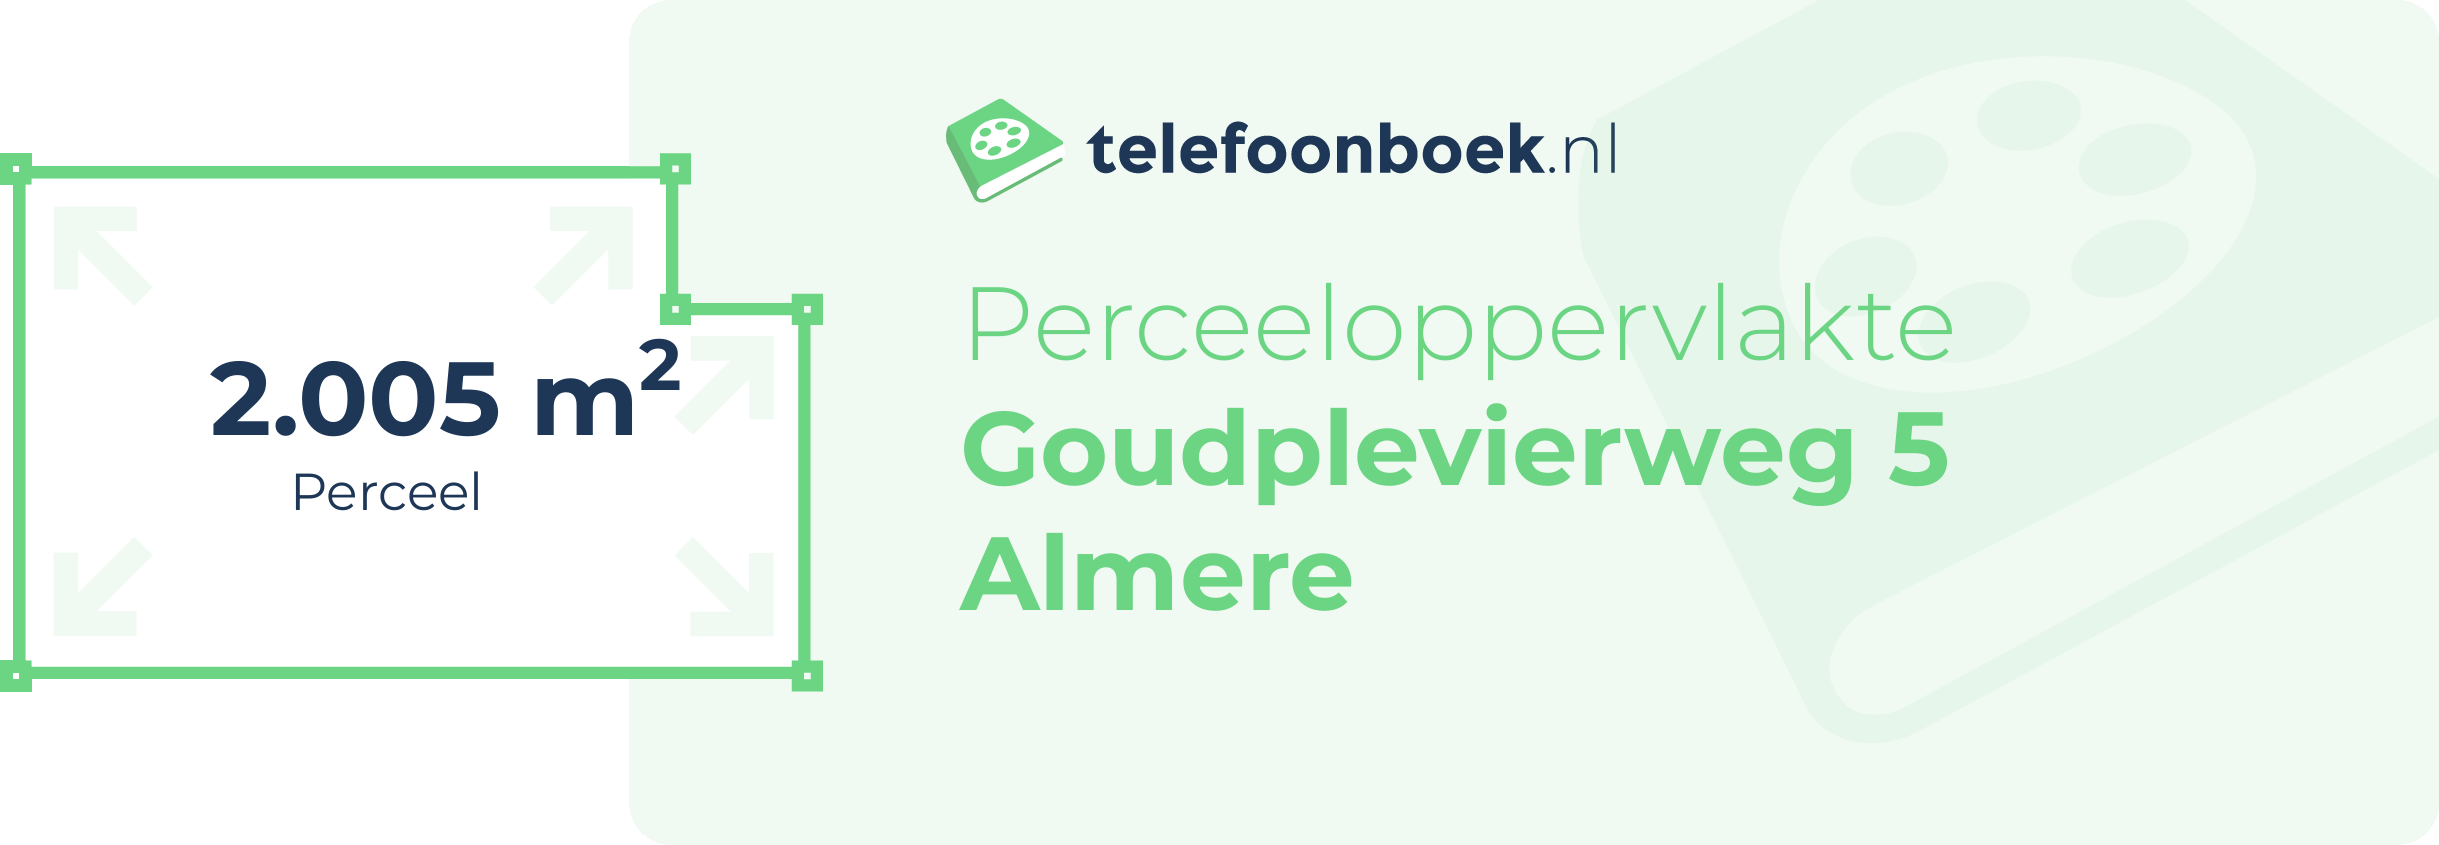 Perceeloppervlakte Goudplevierweg 5 Almere